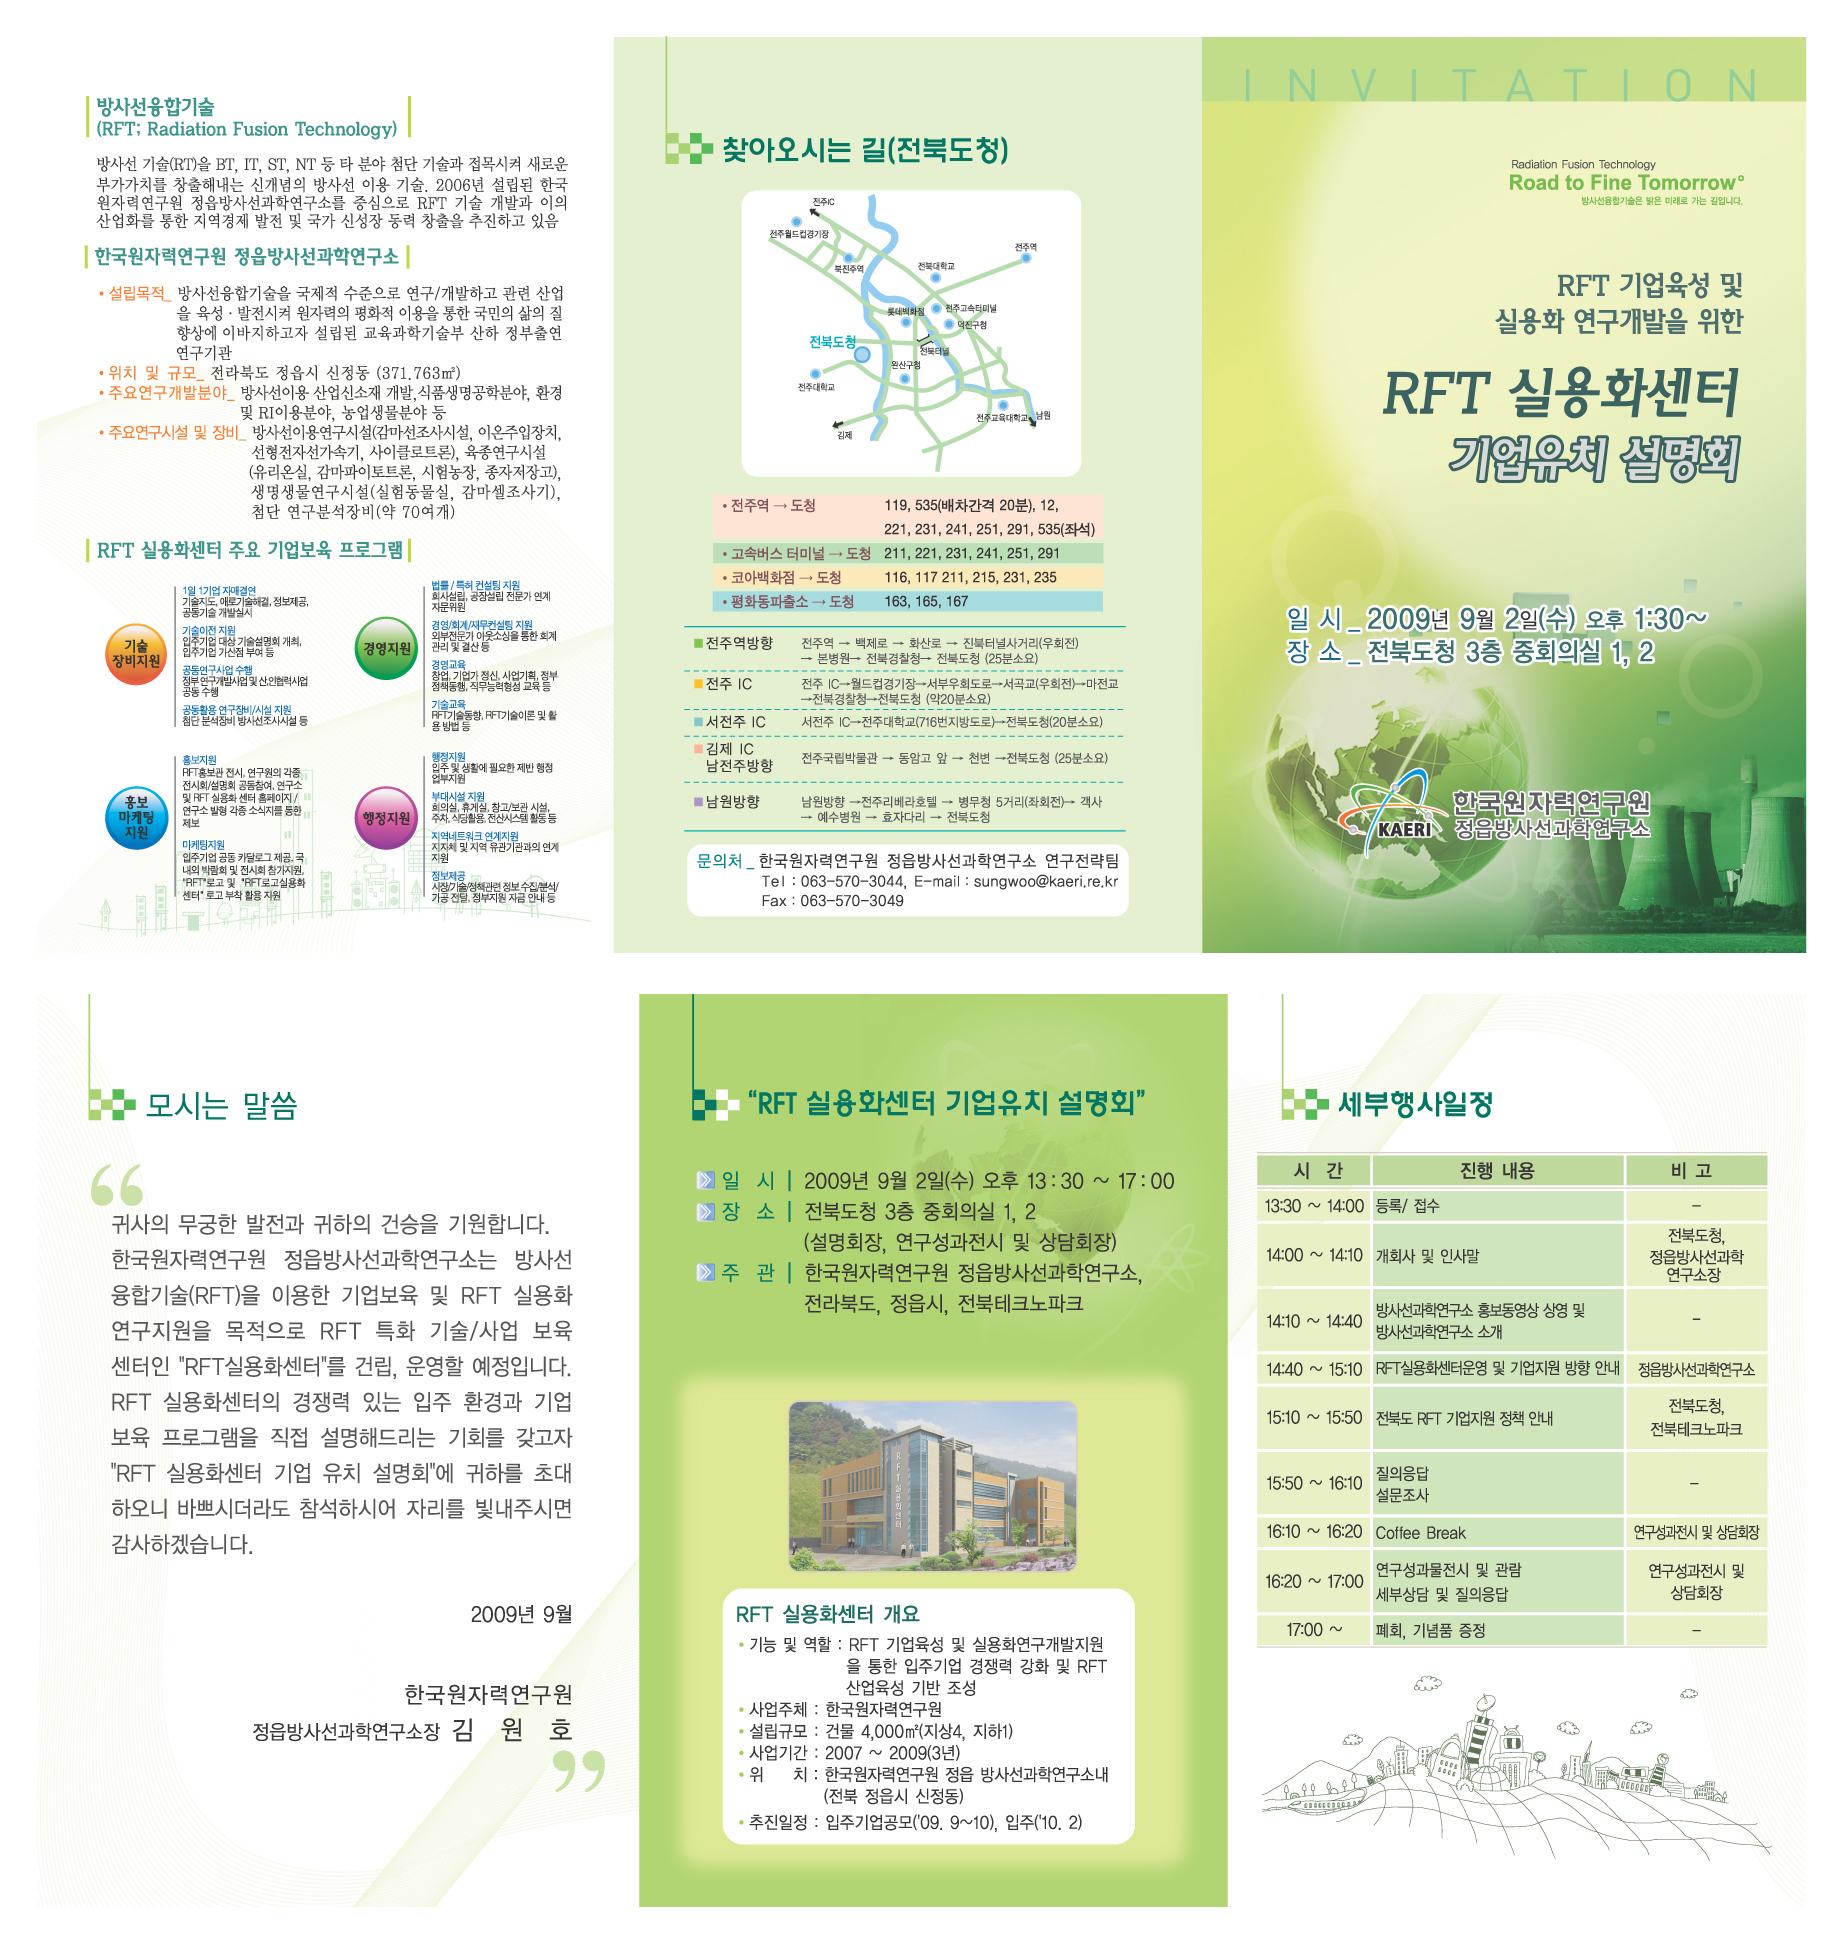 RFT실용화센터 기업유치 설명회 개최